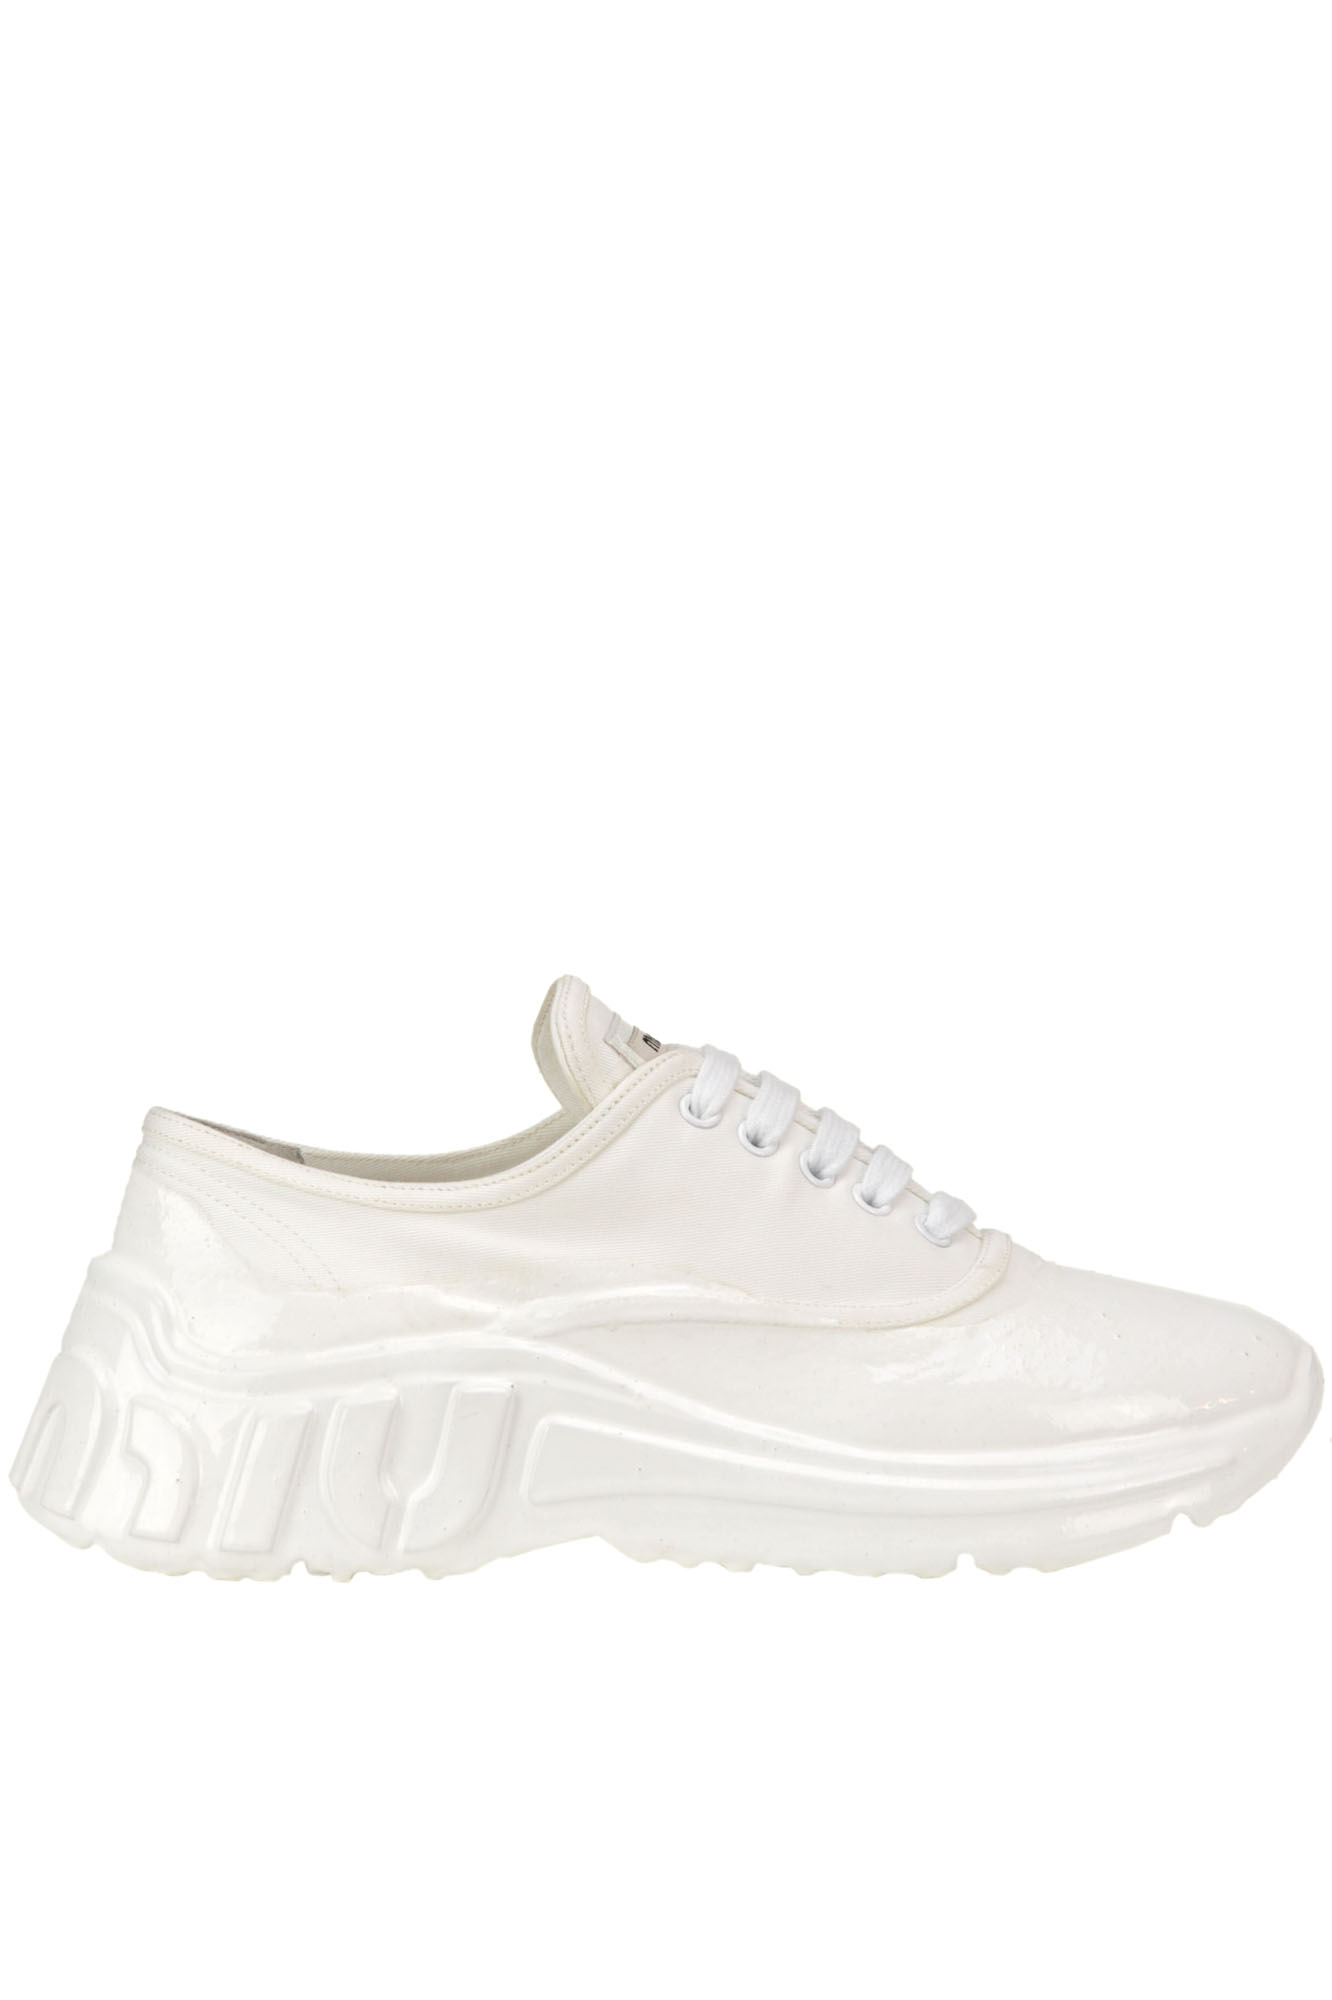 Miu Miu Plastic Coated Canvas Sneakers In White